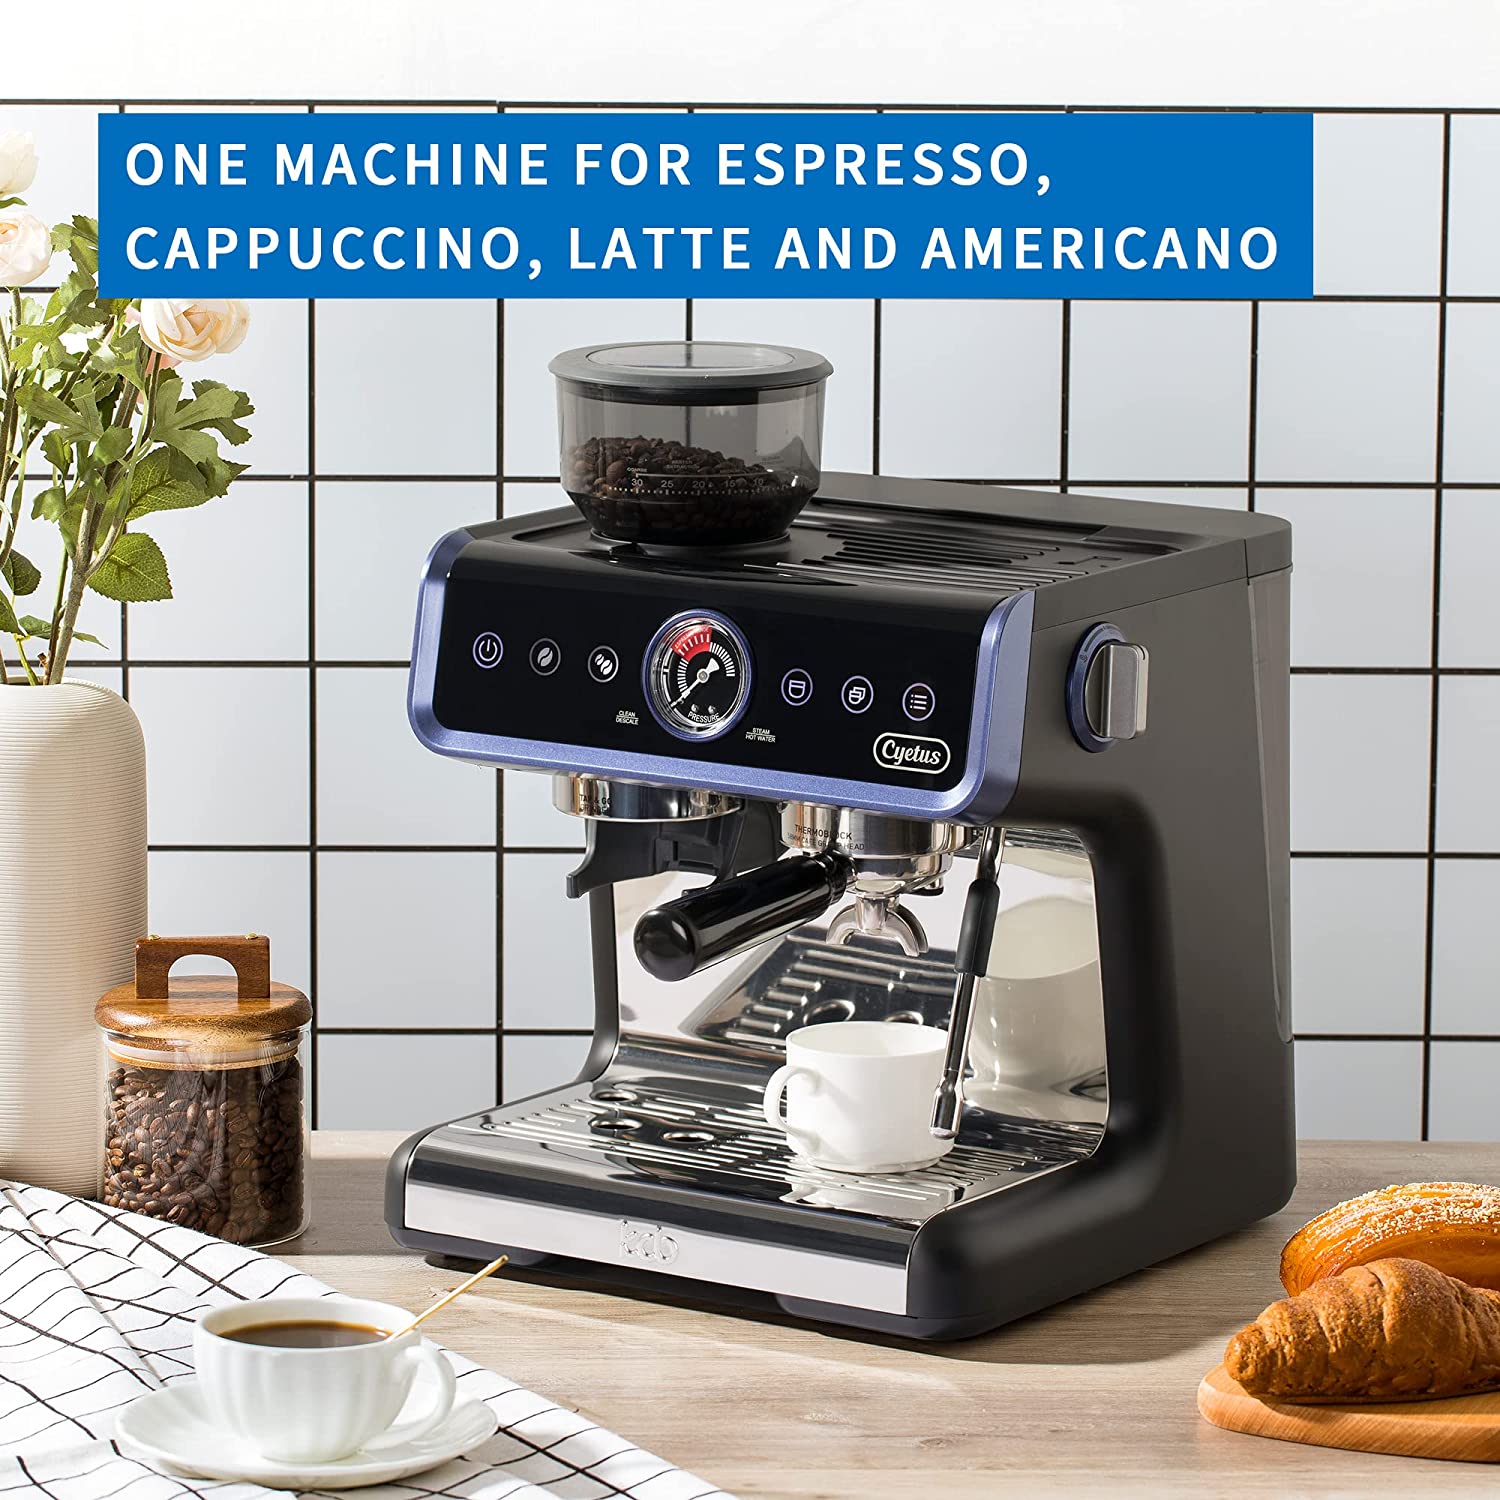 Cyetus Coffee Machine Classic 1 - All in One Home Barista Semi-Auto Es